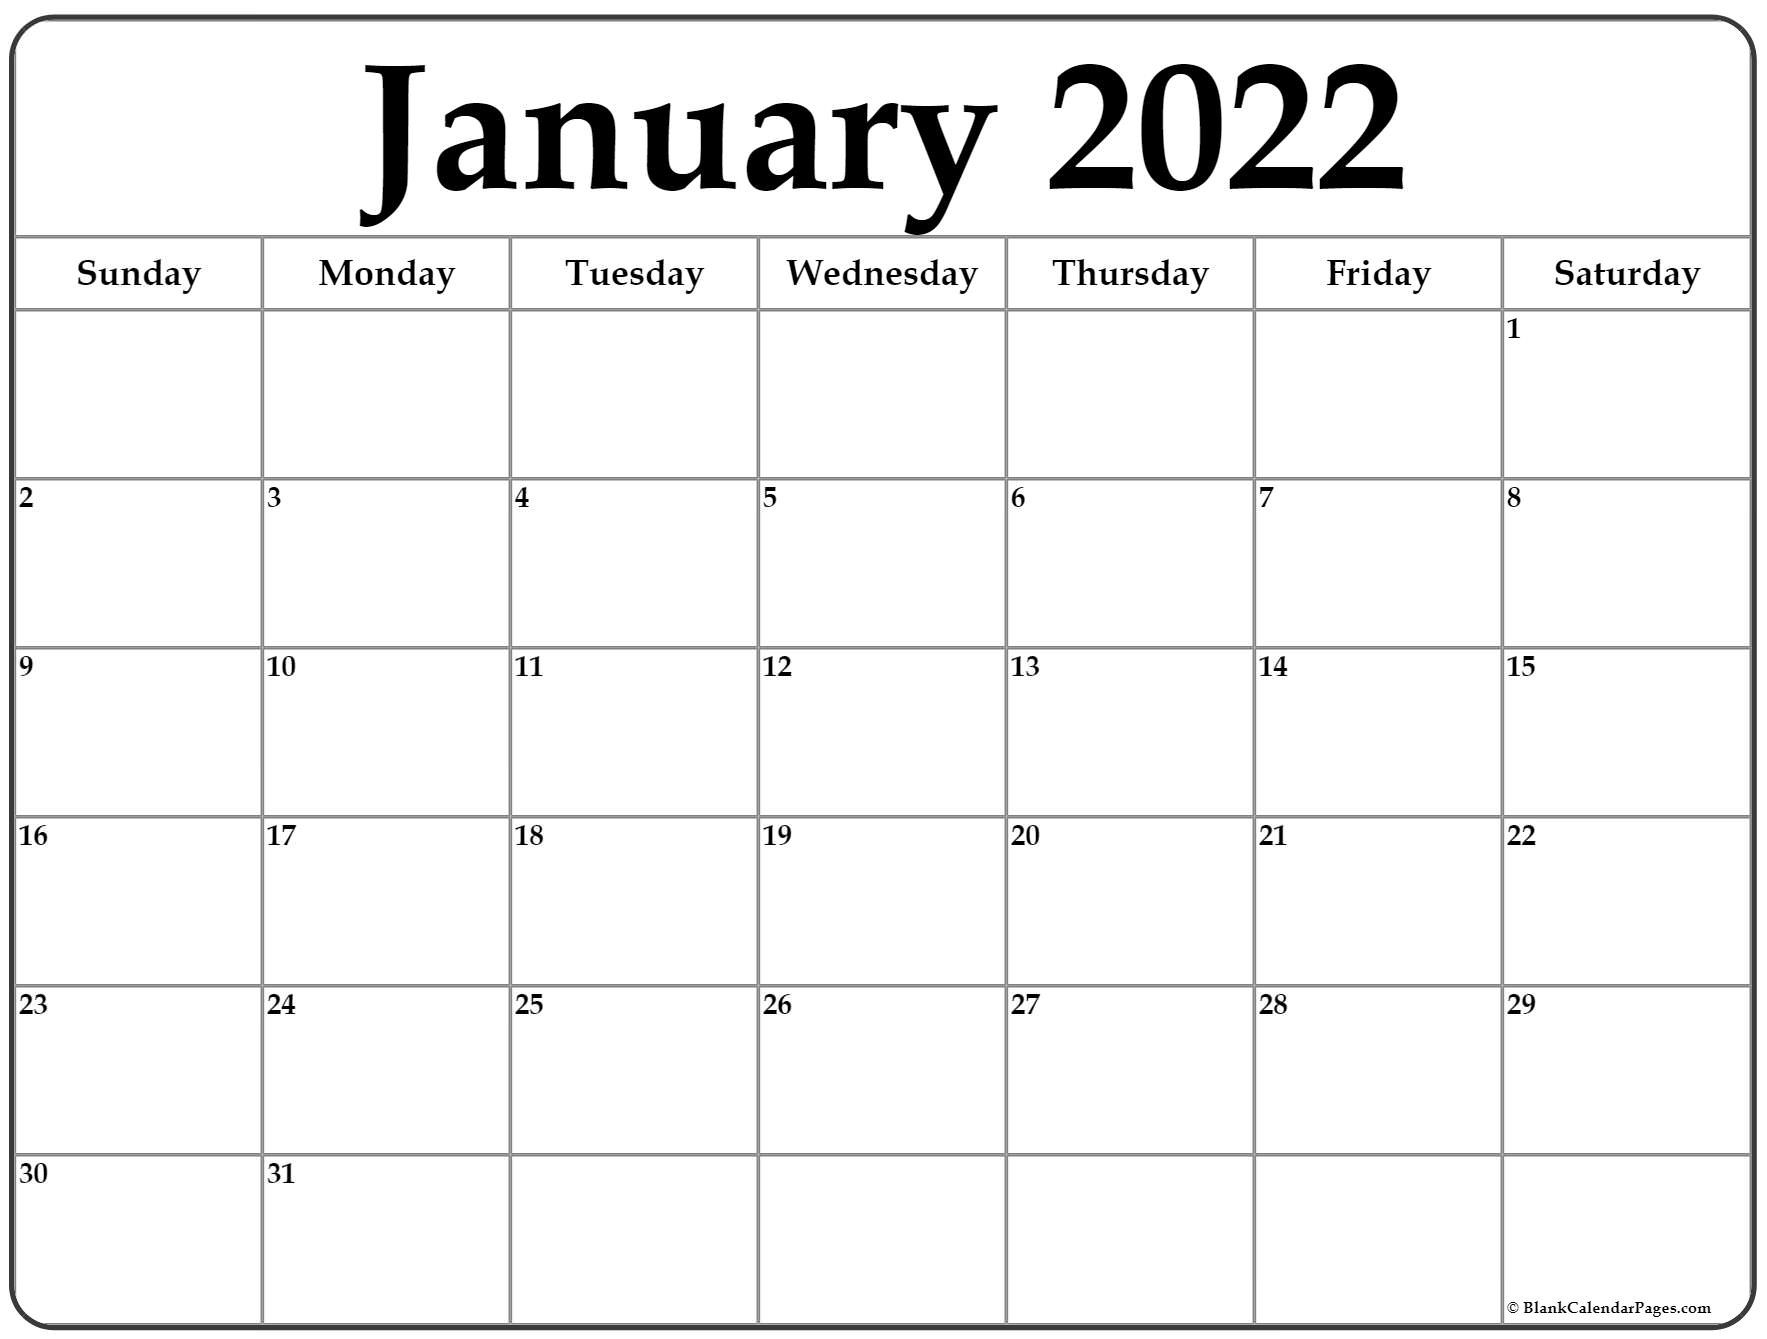 Printable Calendar 2022 / Free January 2022 Printable Calendar Template-2022 Printable Monthly Calendar With Holidays